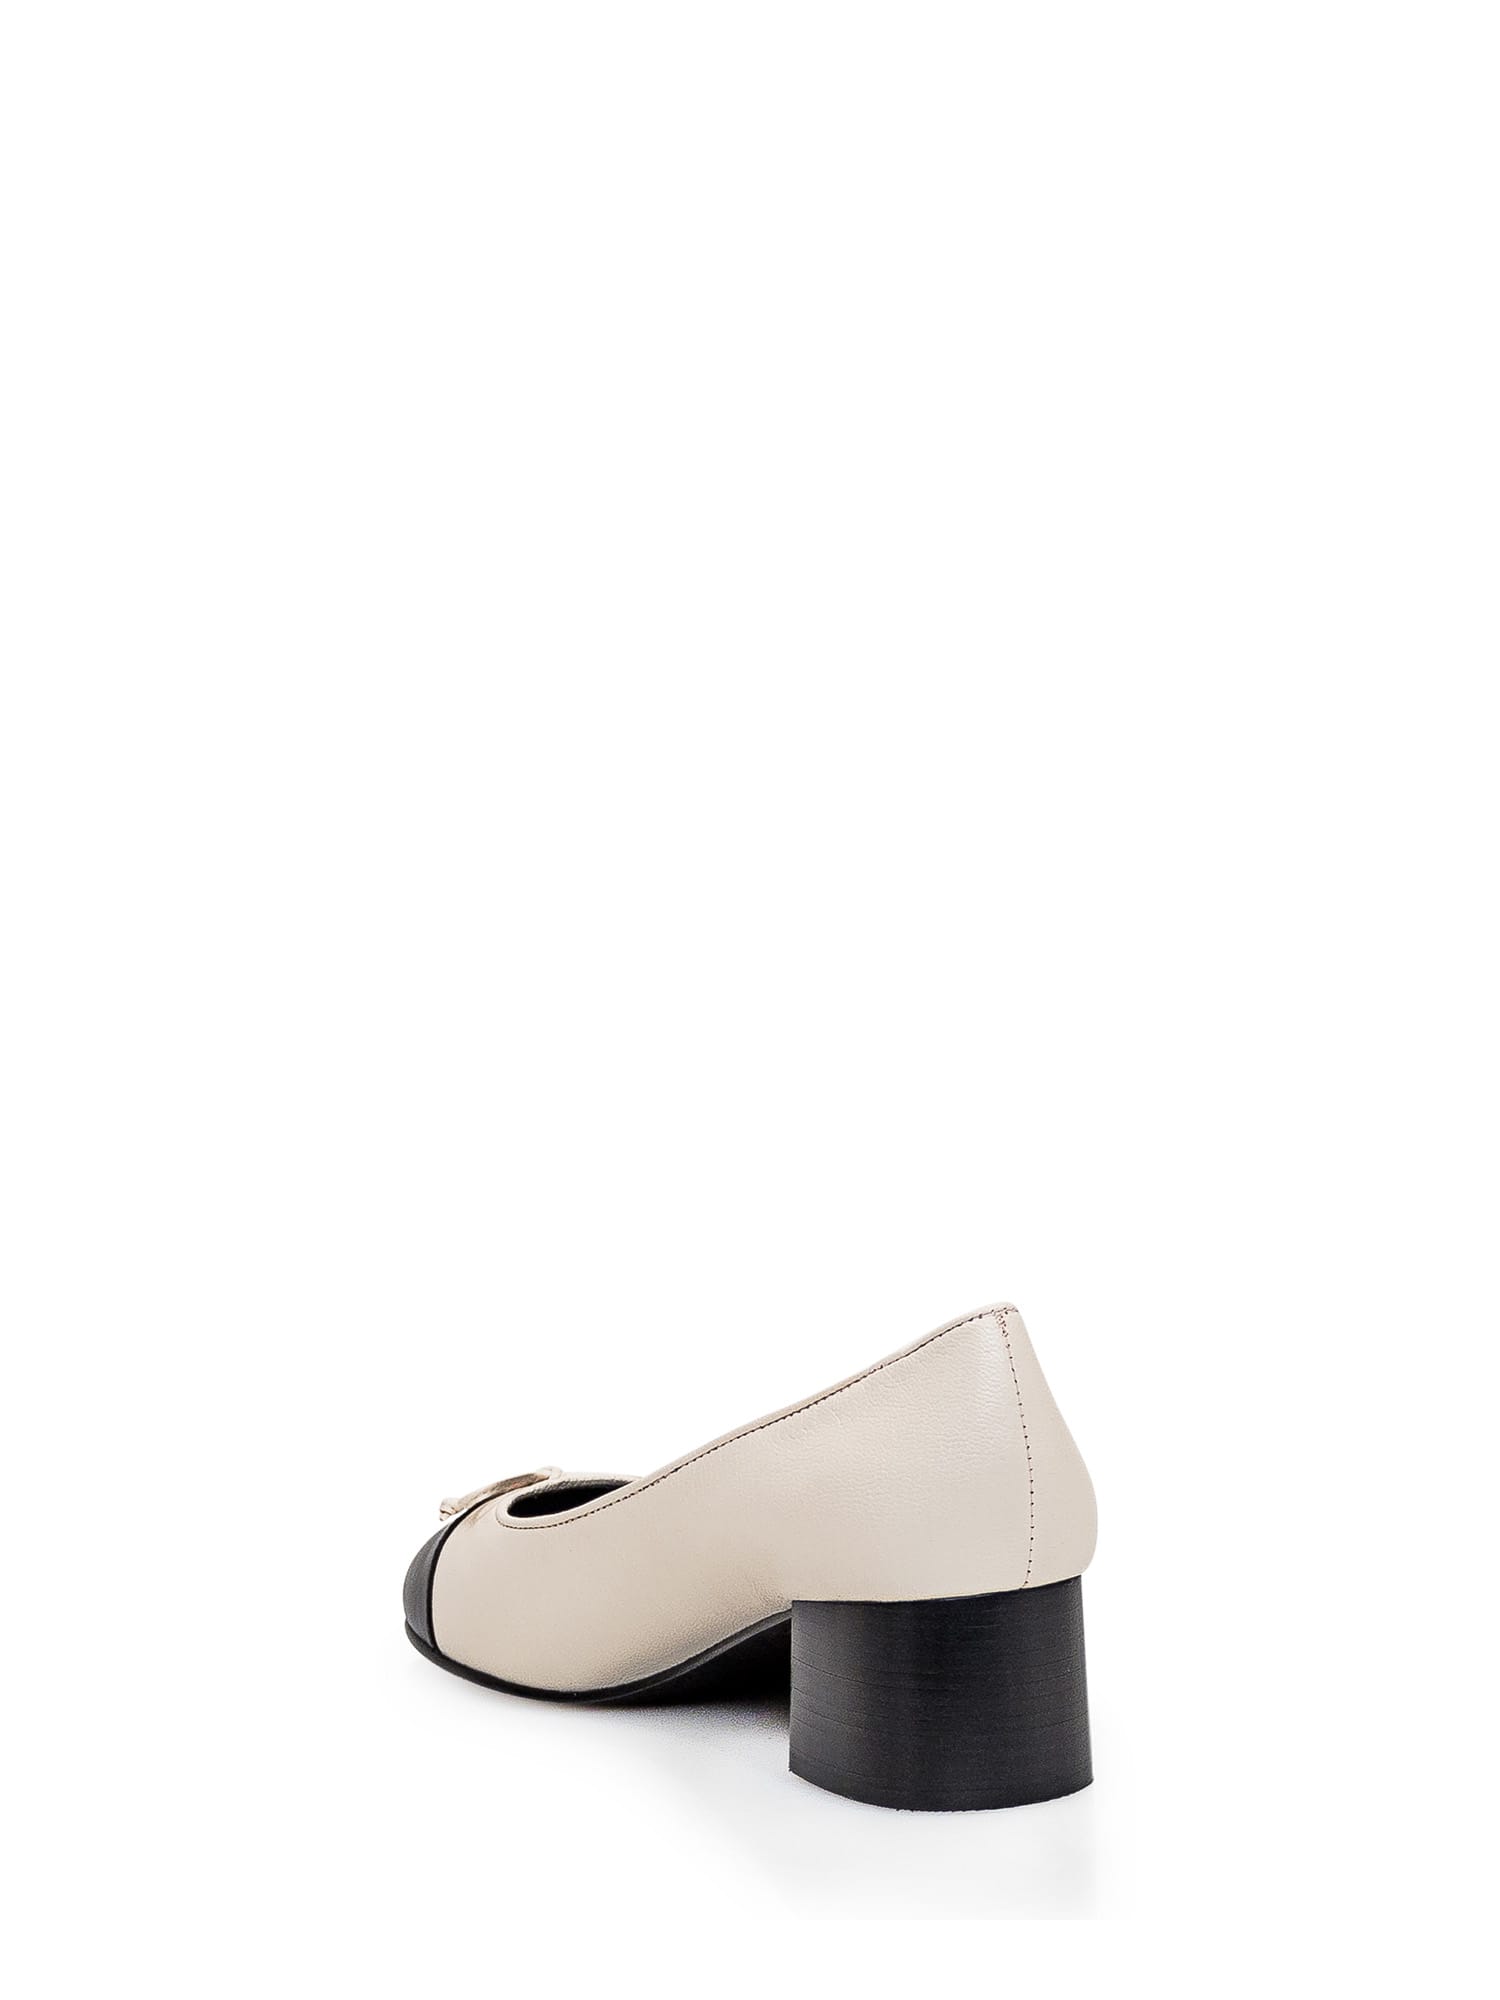 Shop Tory Burch Cap-toe Pump In Light Cream/perfect Black